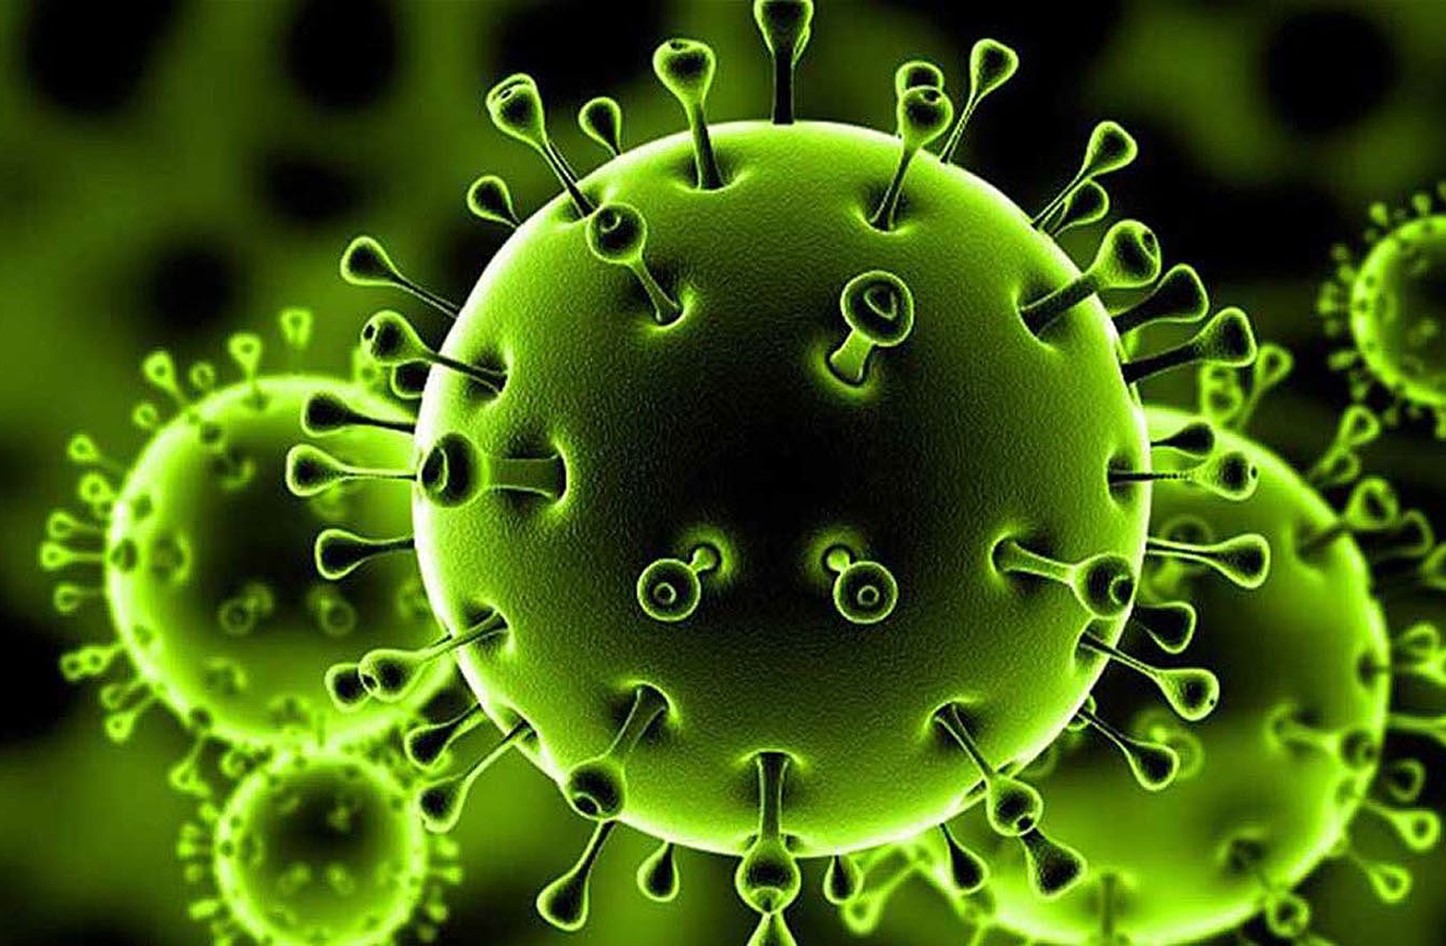 إستشاري مناعة يؤكد قلة خطورة فيروس كورونا هذه الفترة وانخفاض عدد الوفيات على مستوى العالم